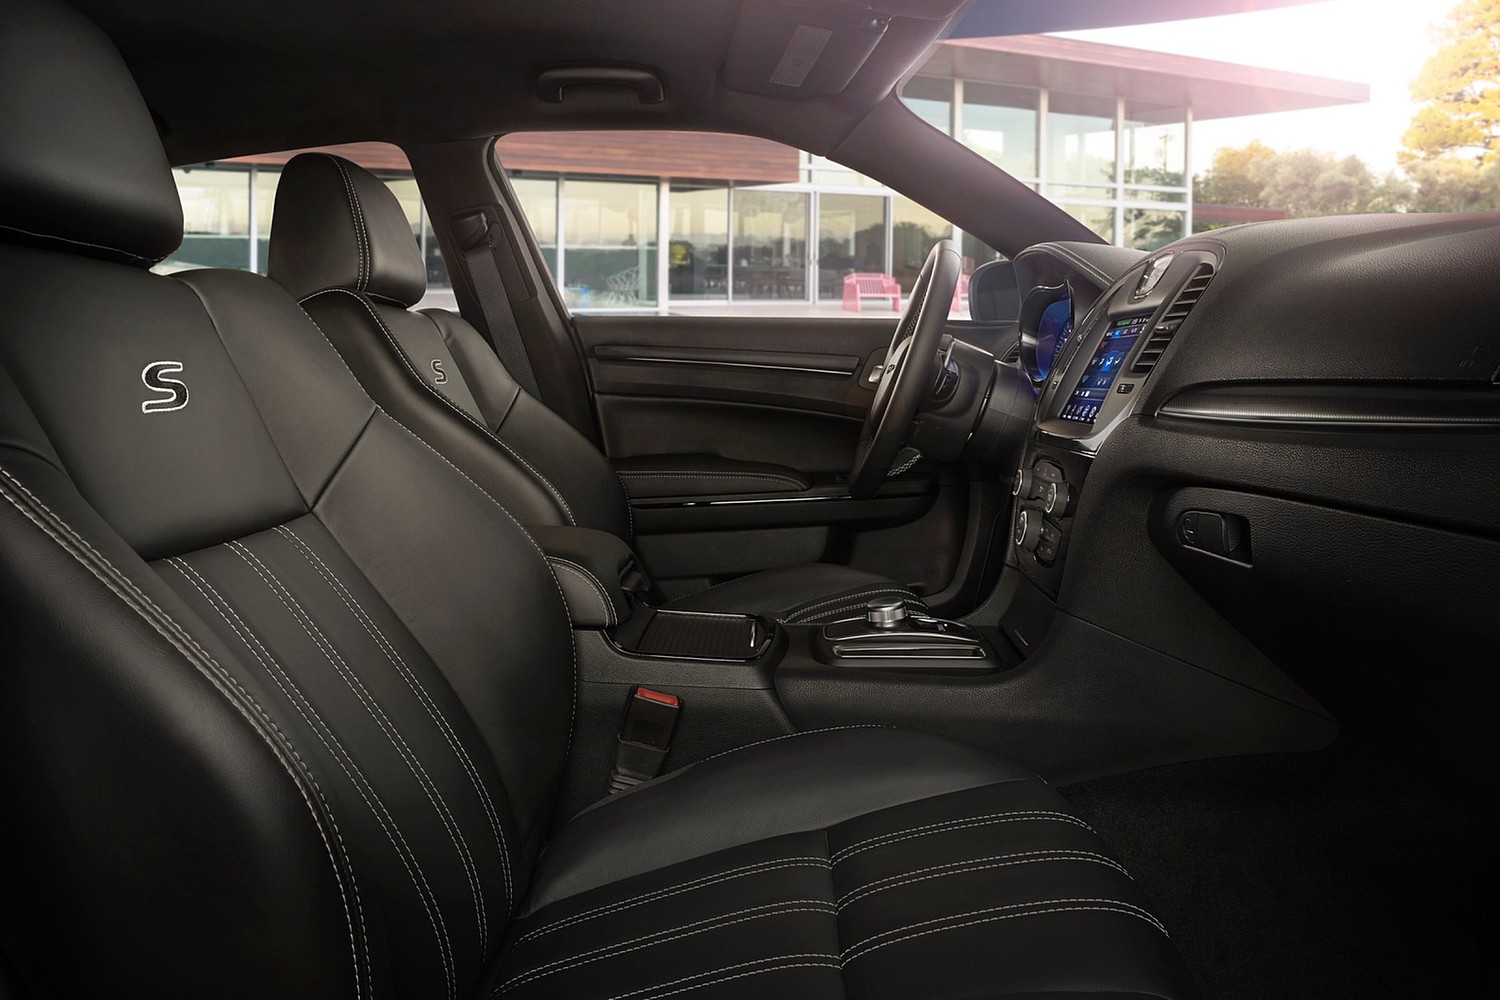 Chrysler 300 S Sedan Interior (2015 model year shown)